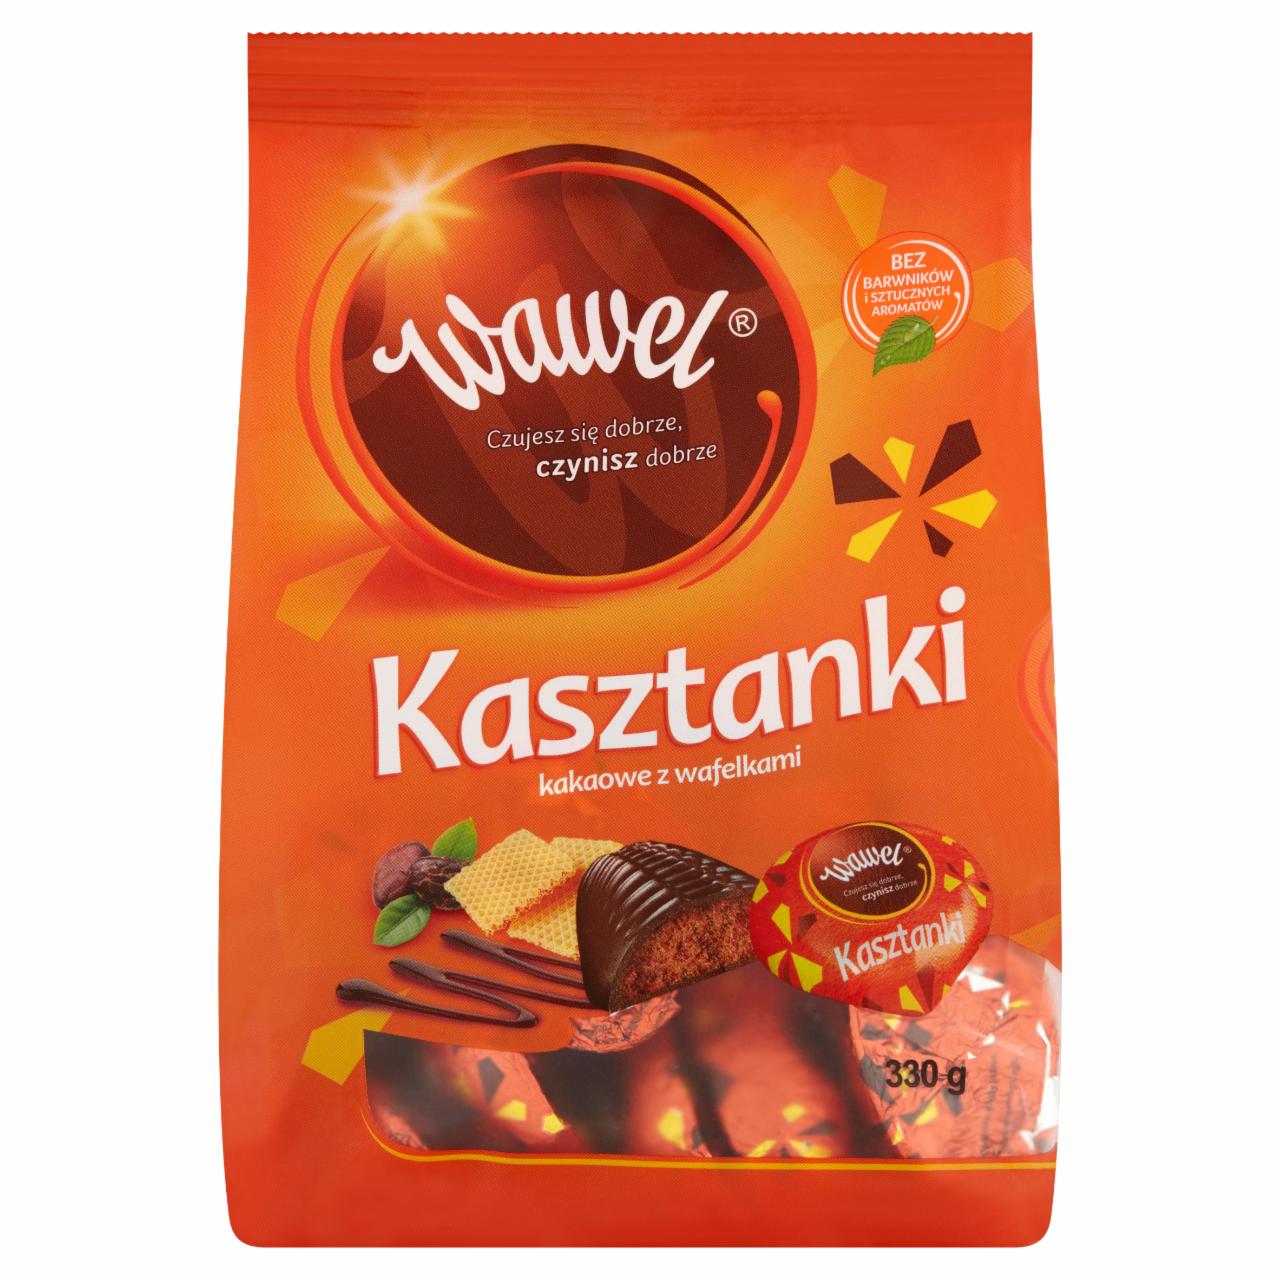 Zdjęcia - Wawel Kasztanki kakaowe z wafelkami Czekoladki nadziewane 330 g